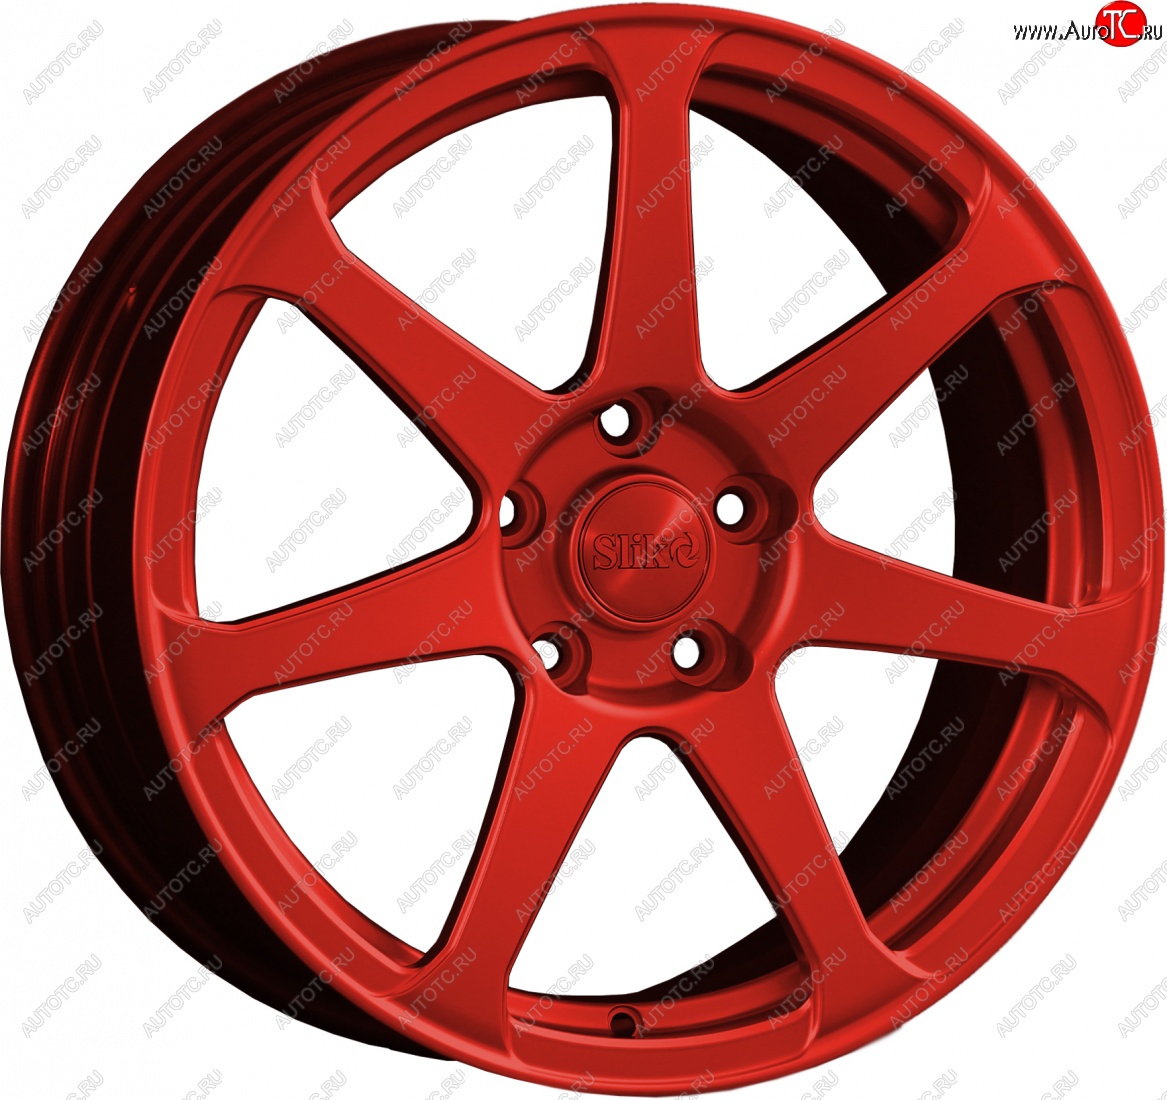 14 599 р. Кованый диск Slik classik R17x7.5 Красный (RED) 7.5x17 Toyota Allex E12# 2-ой рестайлинг (2004-2006) 4x100.0xDIA54.1xET39.0 (Цвет: RED)